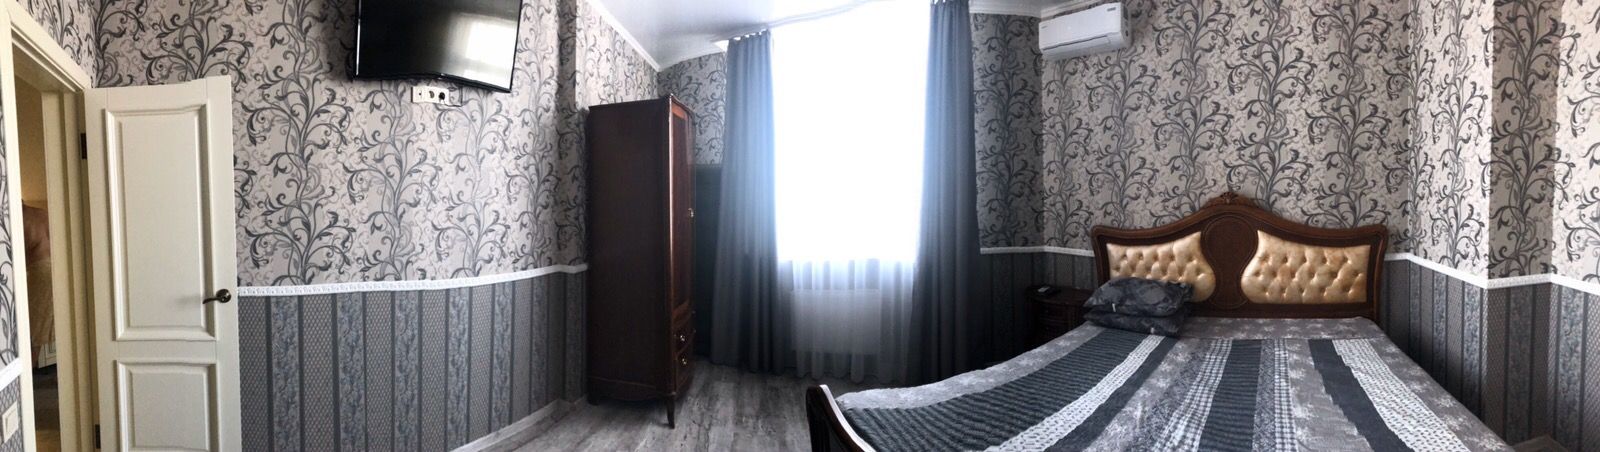 Двухкомнатная квартира в ЖК "Гагаринский" ID 46599 (Фото 2)